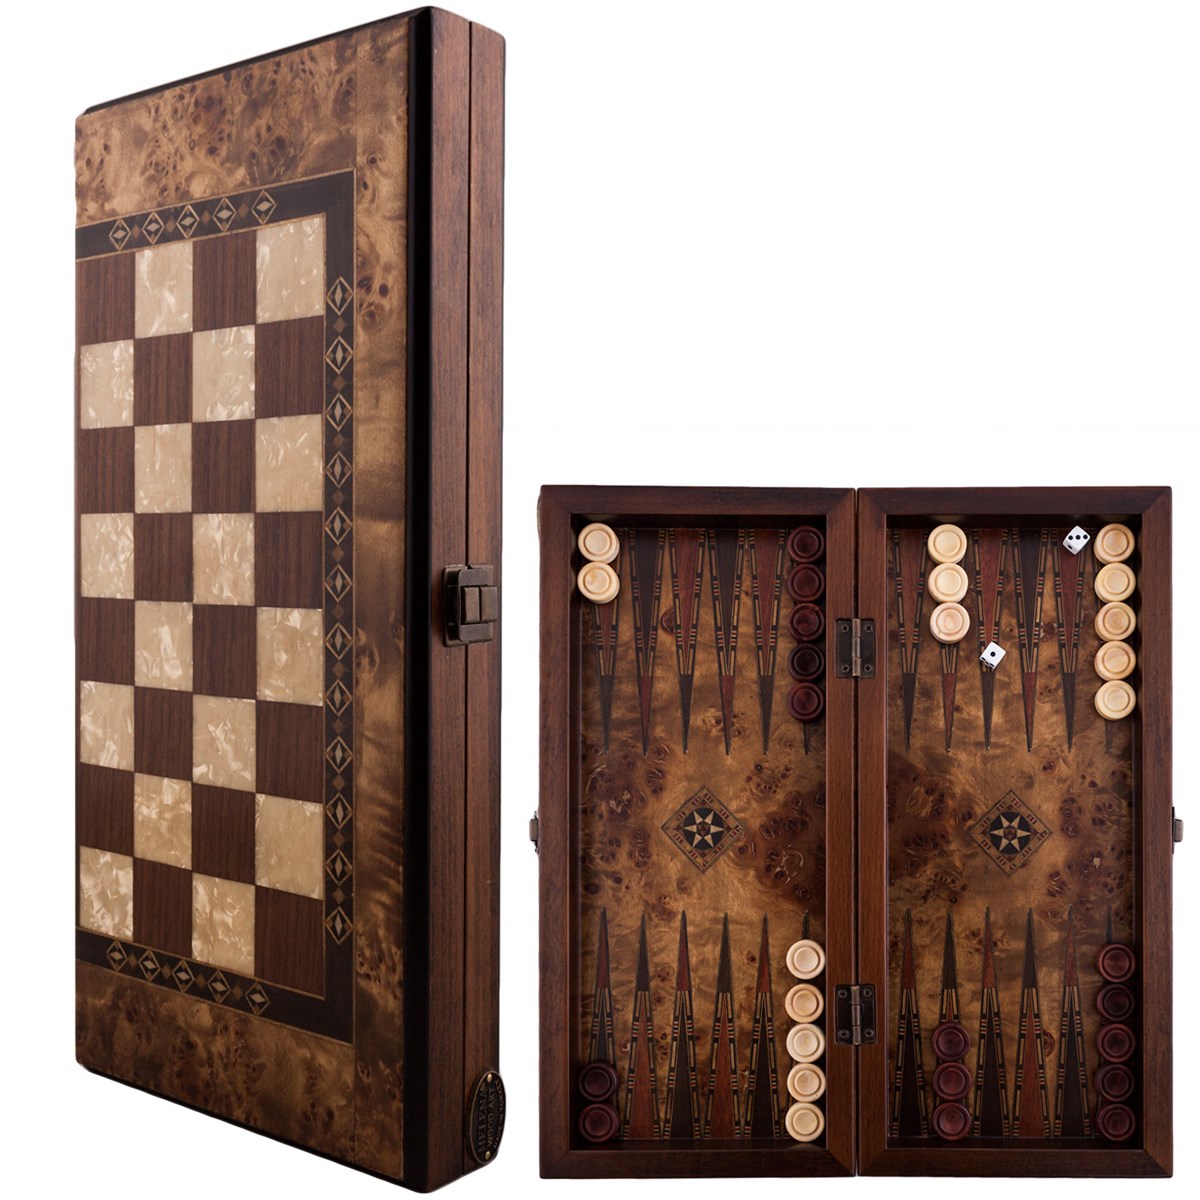 Helena Wood Art Handgemaakte Houten Backgammon Speelset van Hoge Kwaliteit - Tavla - 100% Hout - Luxe uitgave - TricTrac - 36 x 17 cm